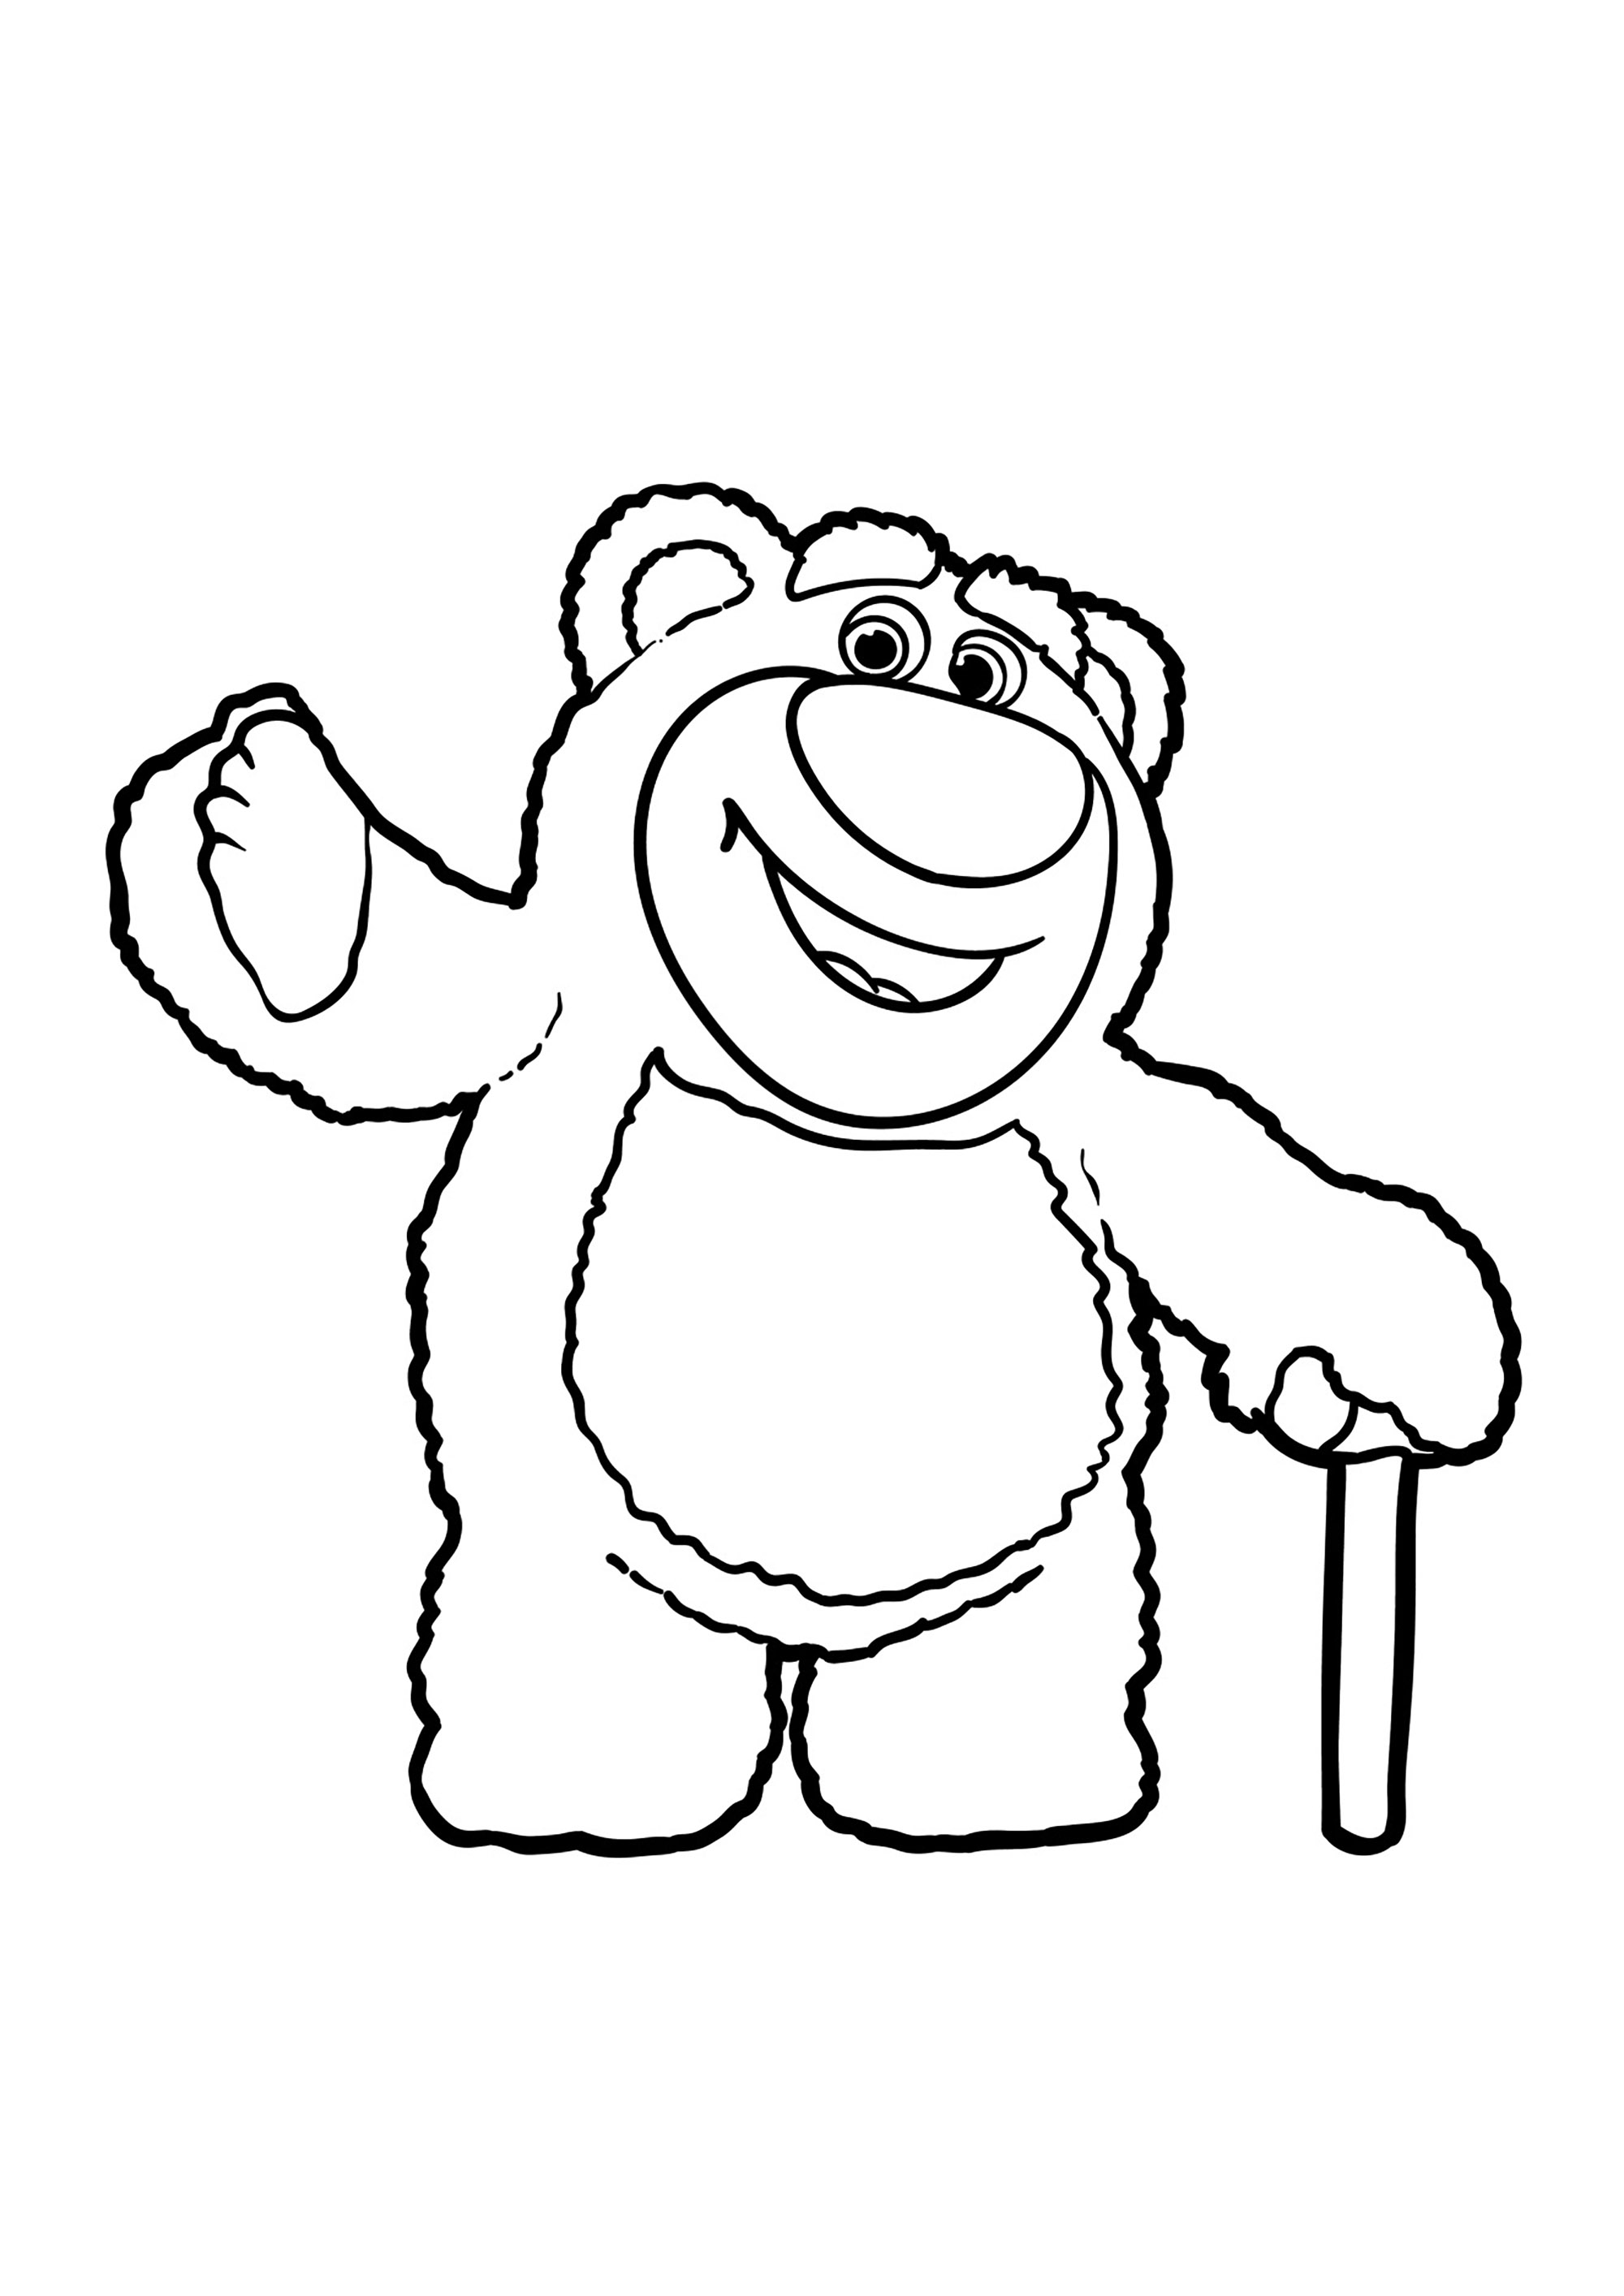 Lotso, le méchant ours rose de Toy Story 3. N'hésite pas à ajouter des détails supplémentaires à l'ours, comme des rayures, des taches ou des motifs, pour donner une touche personnelle à ta création.